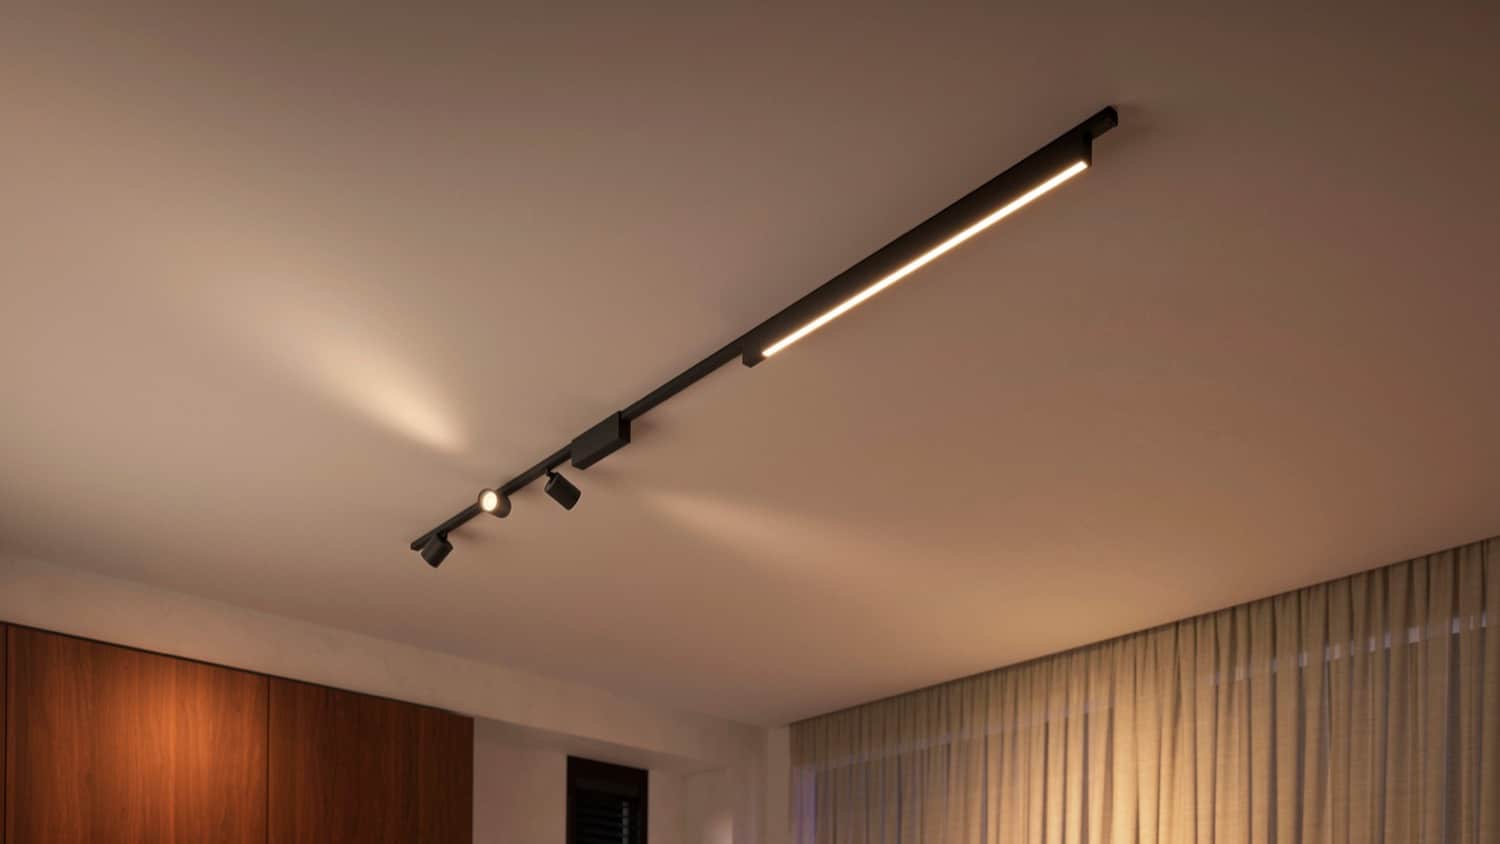 Philips Hue unveils new HomeKit gradient lightstrip, reimagined